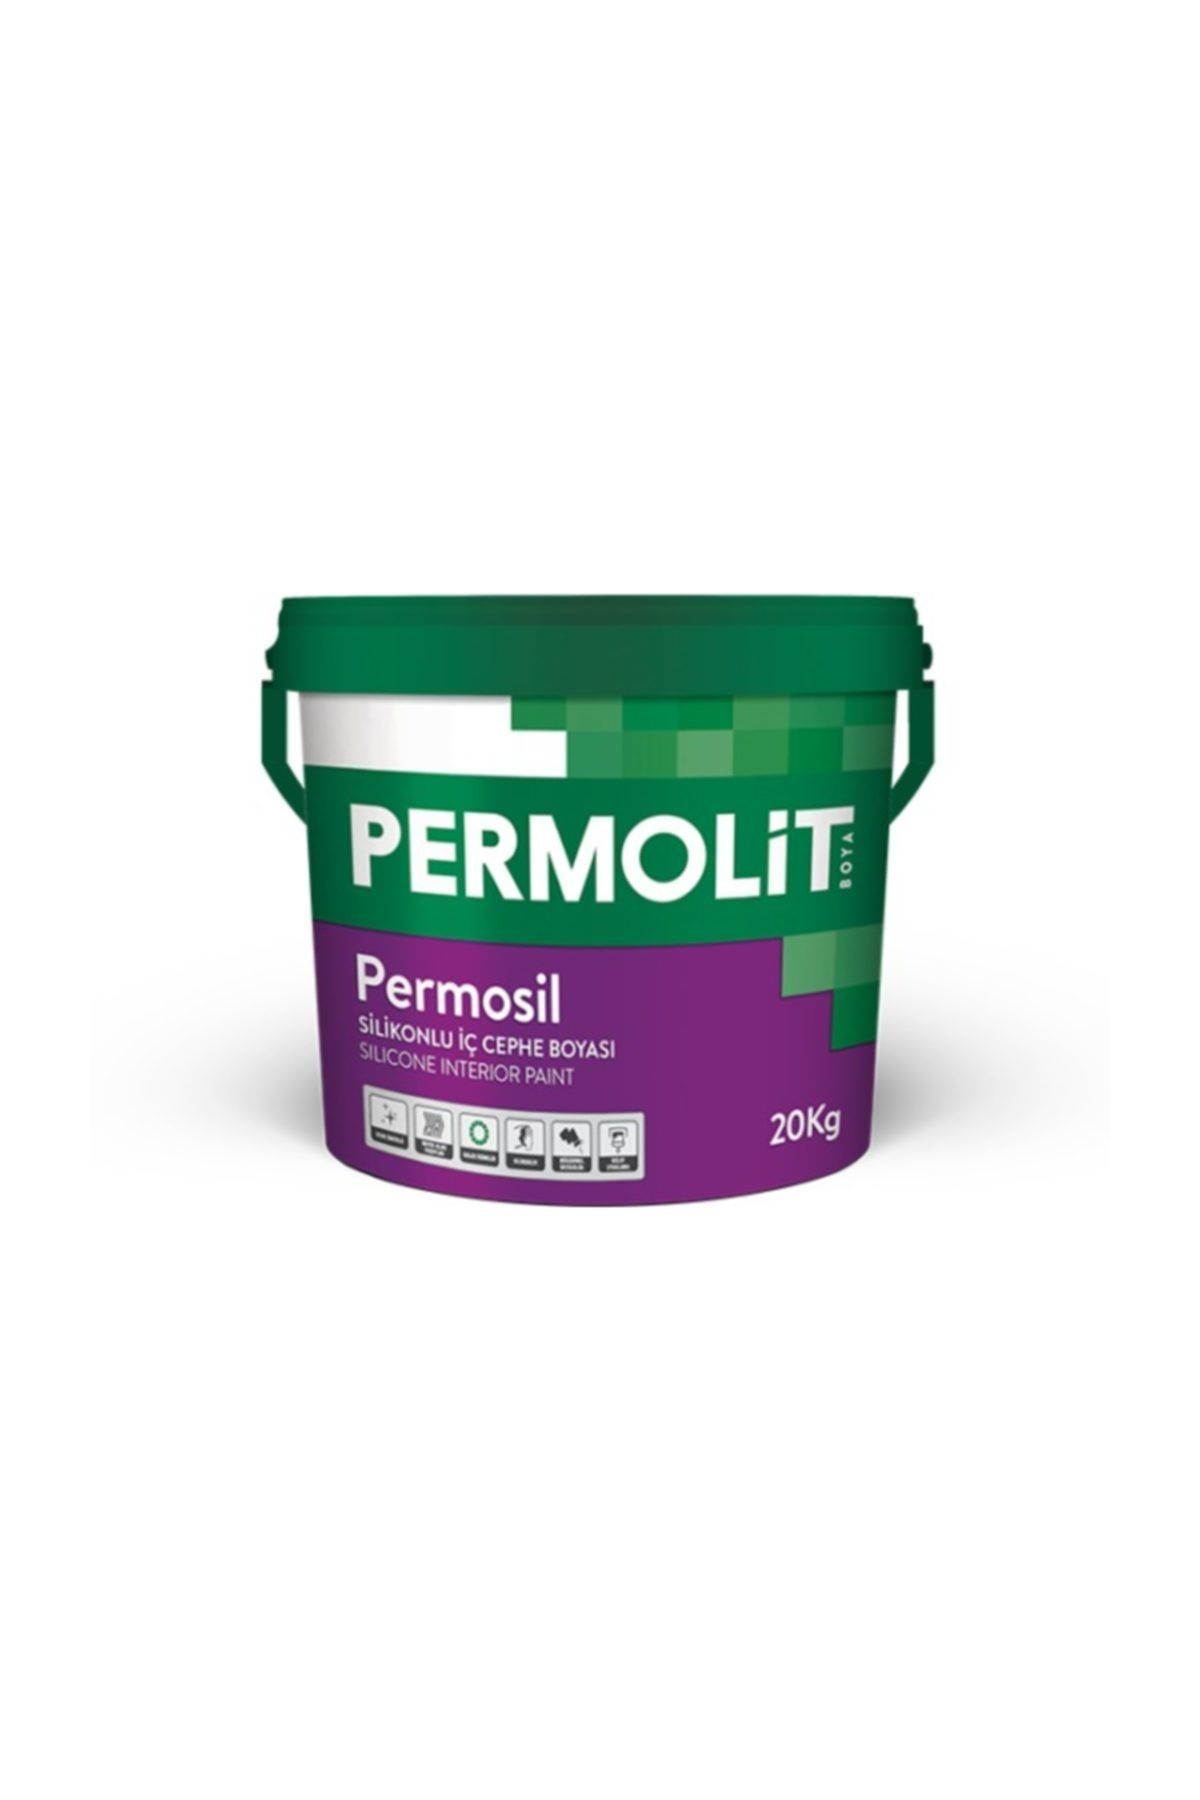 Permolit Permosil Silikonlu Iç Cephe Boyası 10 Kg 2209 Badem